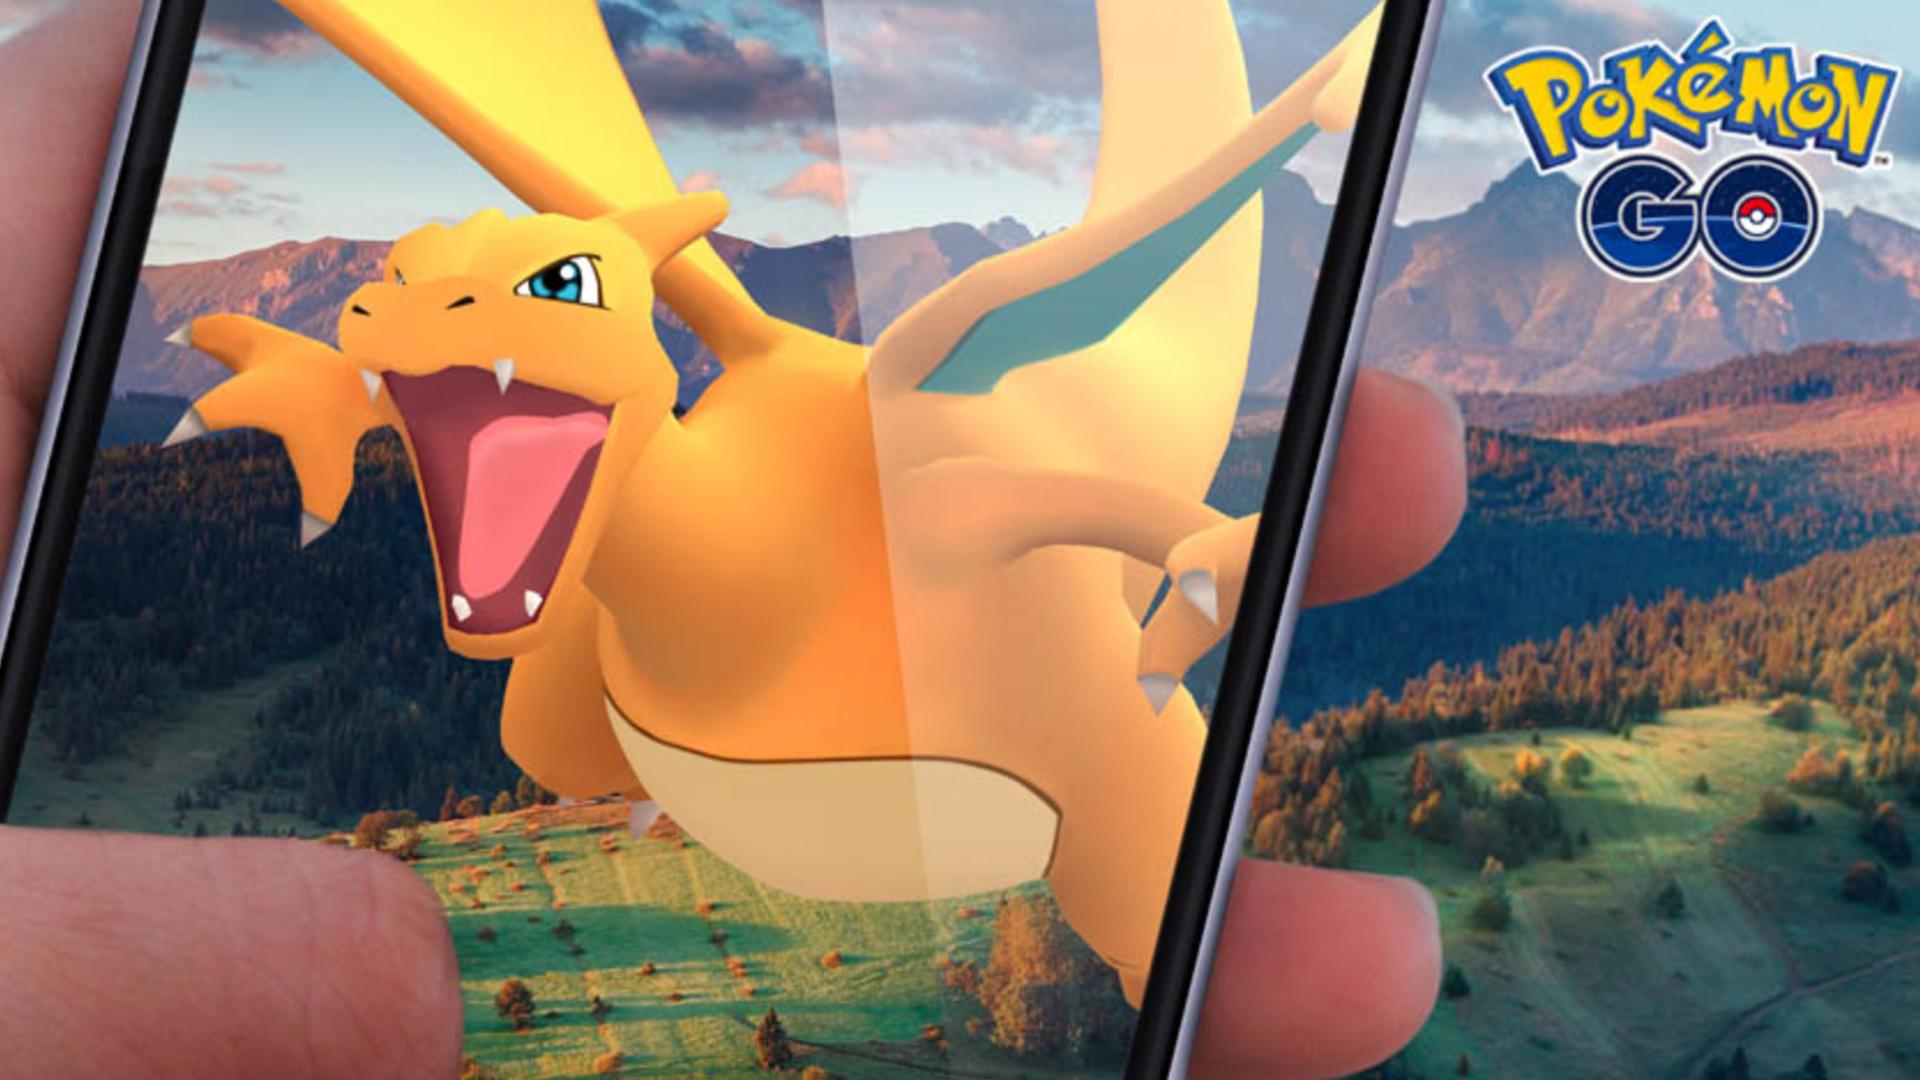  Si todavía juegas Pokémon Go en iPhone, ahora puedes disfrutar de una nueva función